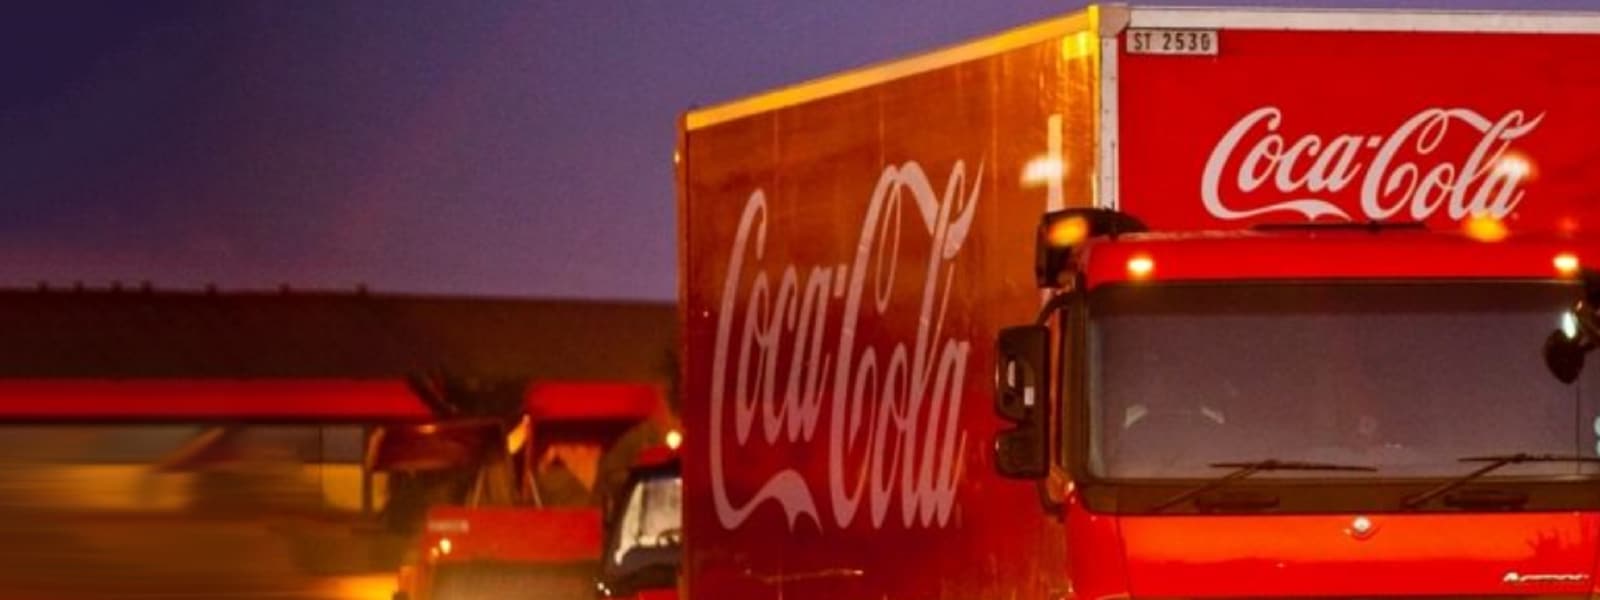 A Coca-Cola truck